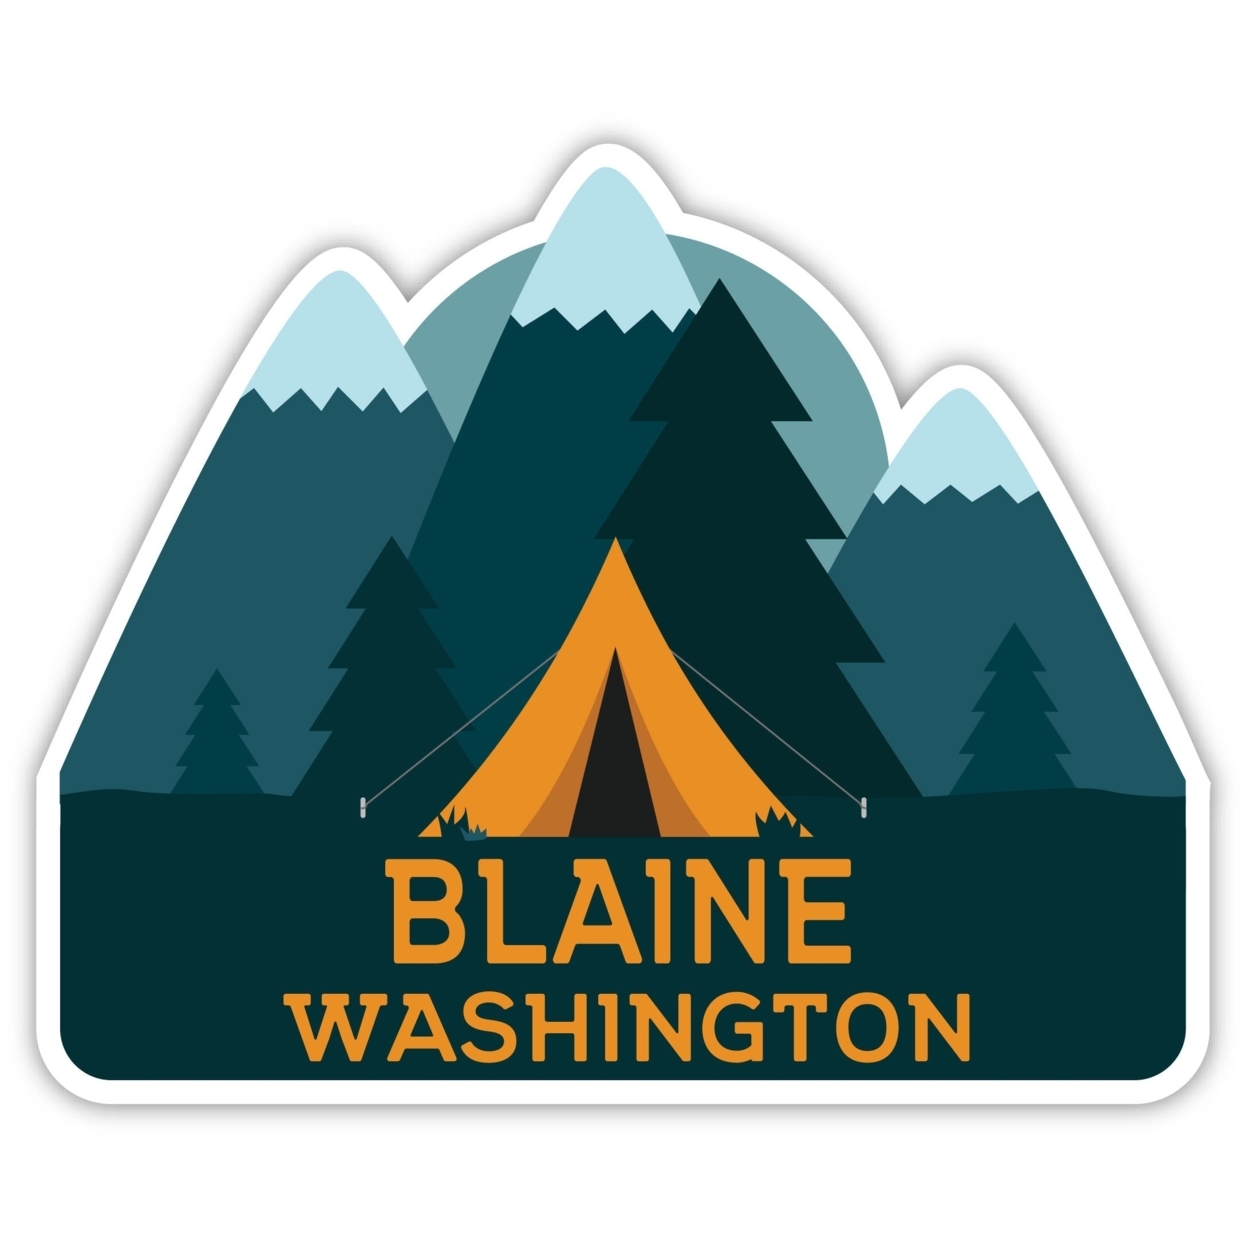 Blaine Washington Souvenir Decorative Stickers (Choose Theme And Size) - 4-Pack, 12-Inch, Tent